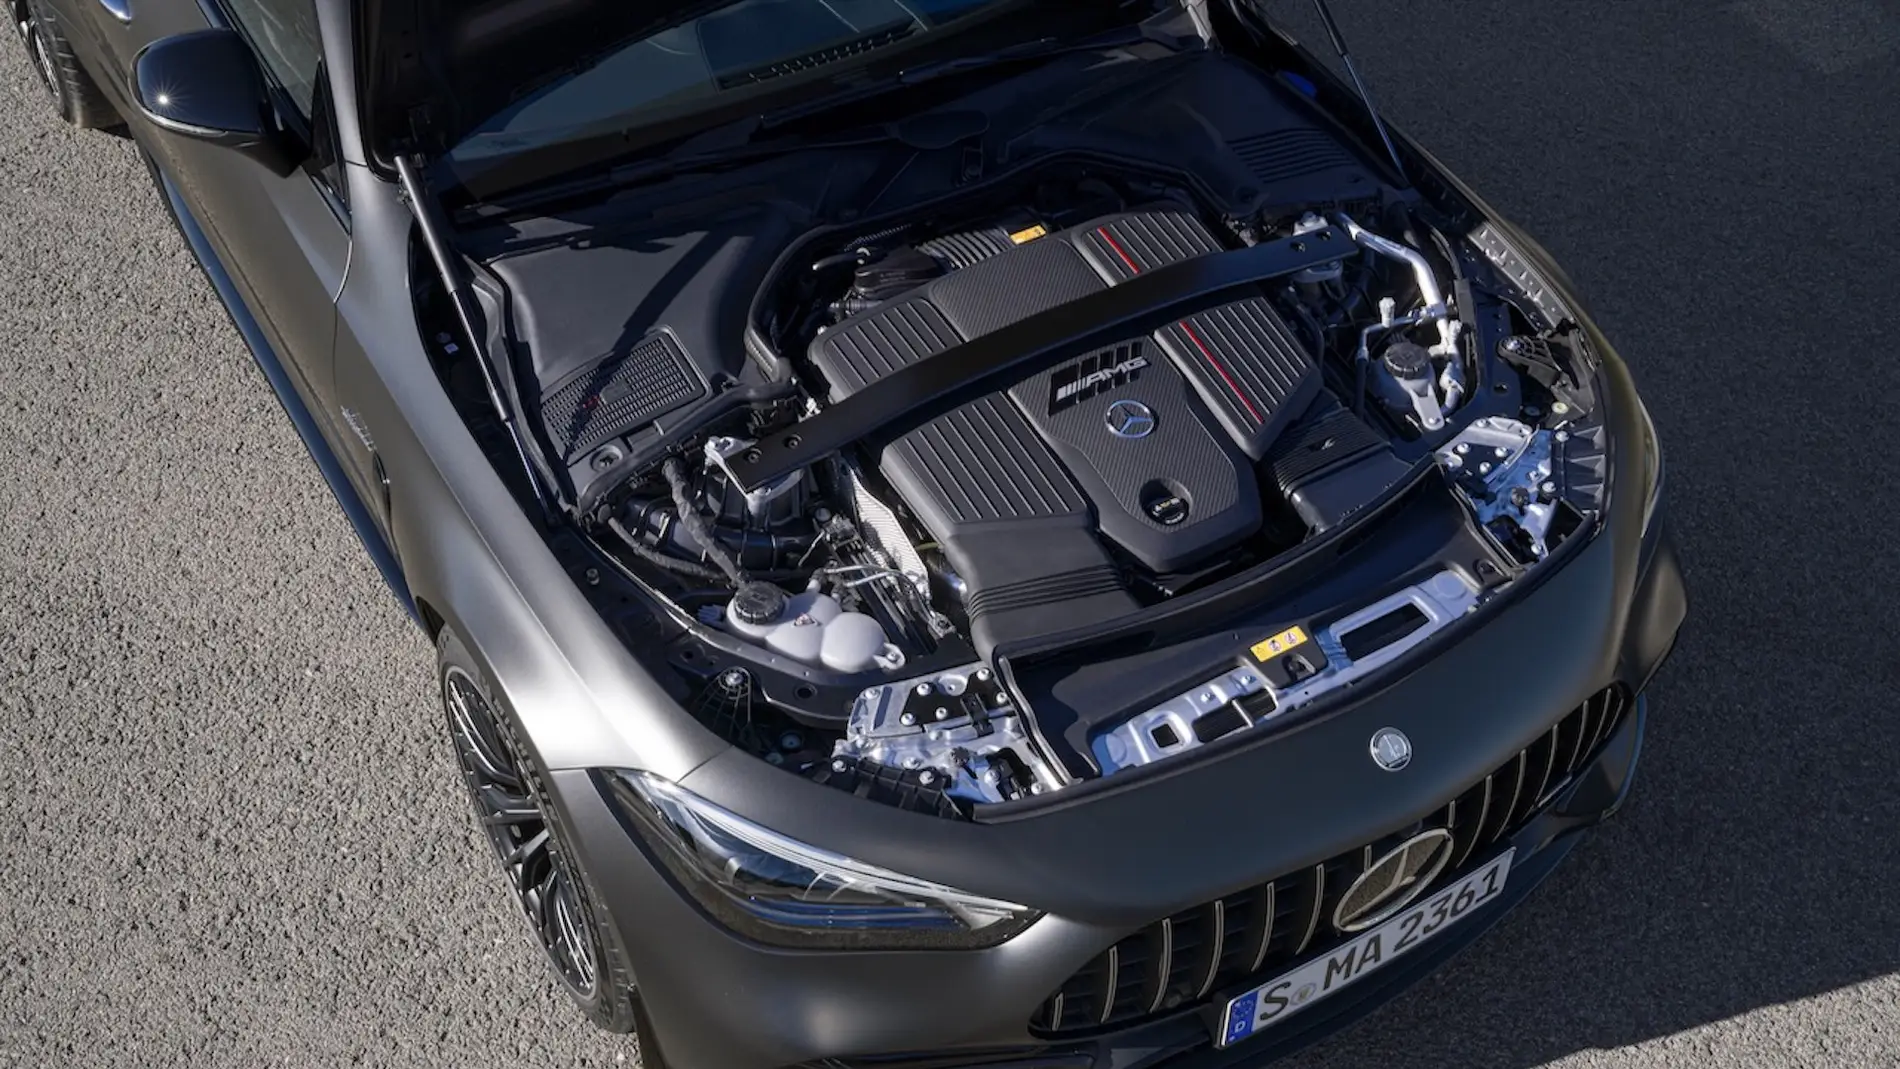 Mercedes-AMG nada a contracorriente con su último producto: un seis cilindros que deja claro que aún tienen vida por delante